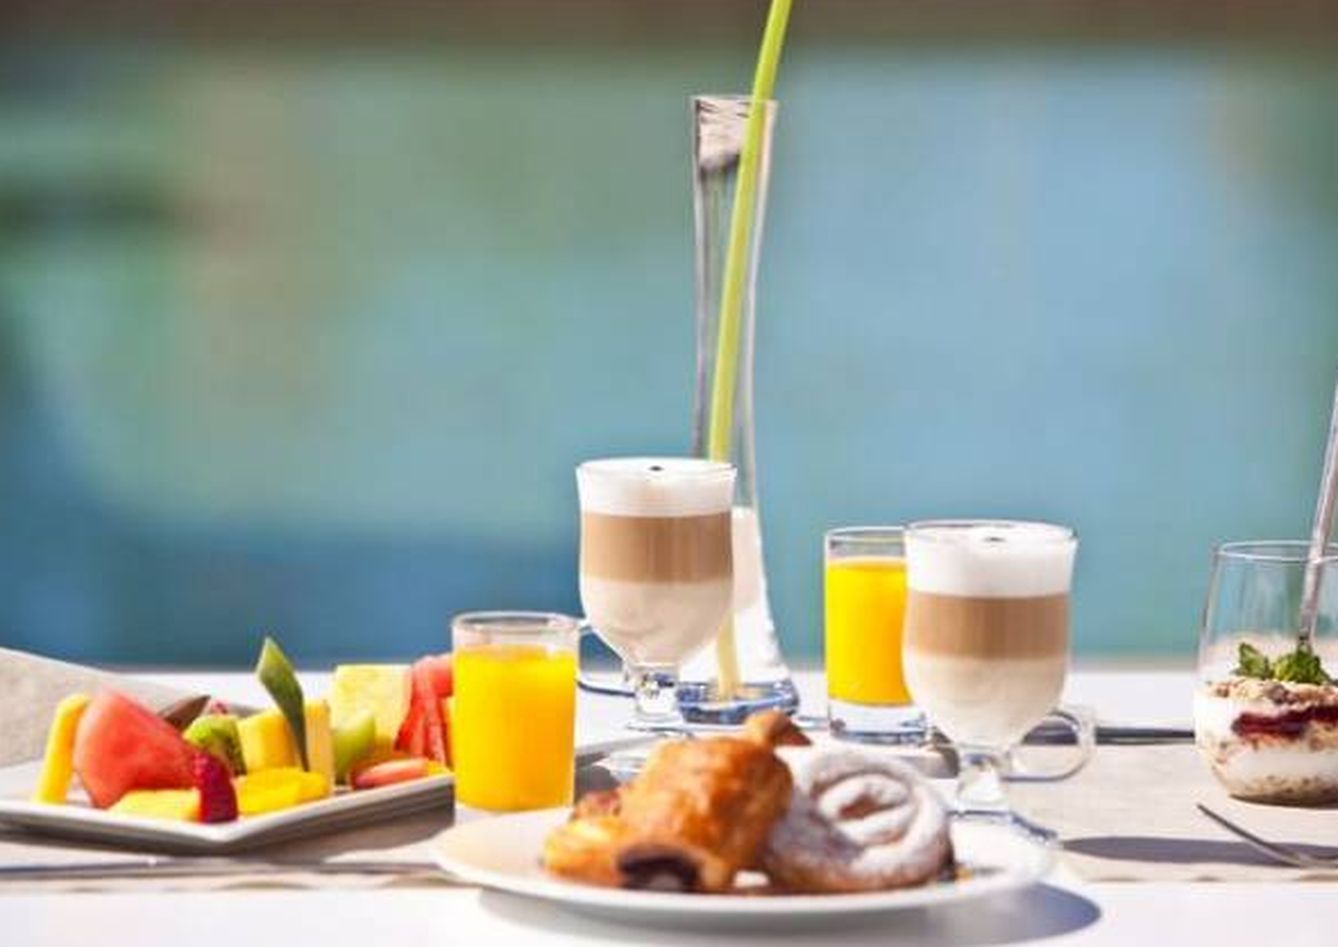 Este desayuno te está esperando en la Ibiza más otoñal